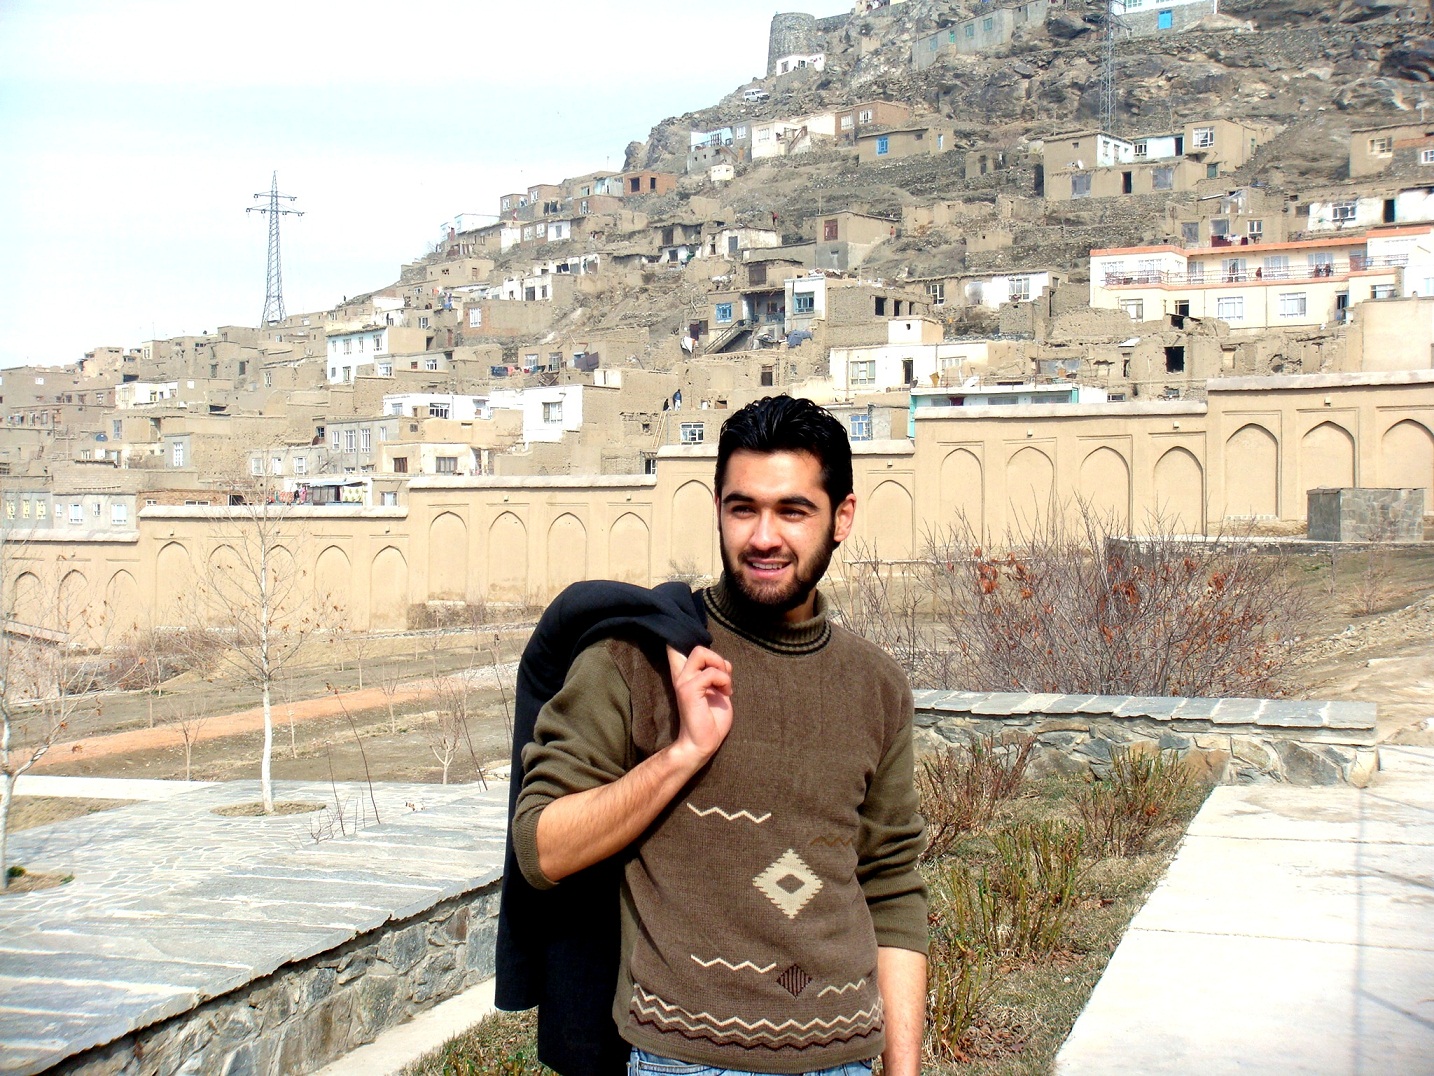 عکس های کمتر دیده شده احمد محمود امپراطور شاعر و نویسنده جوان از کشور افغانستان 